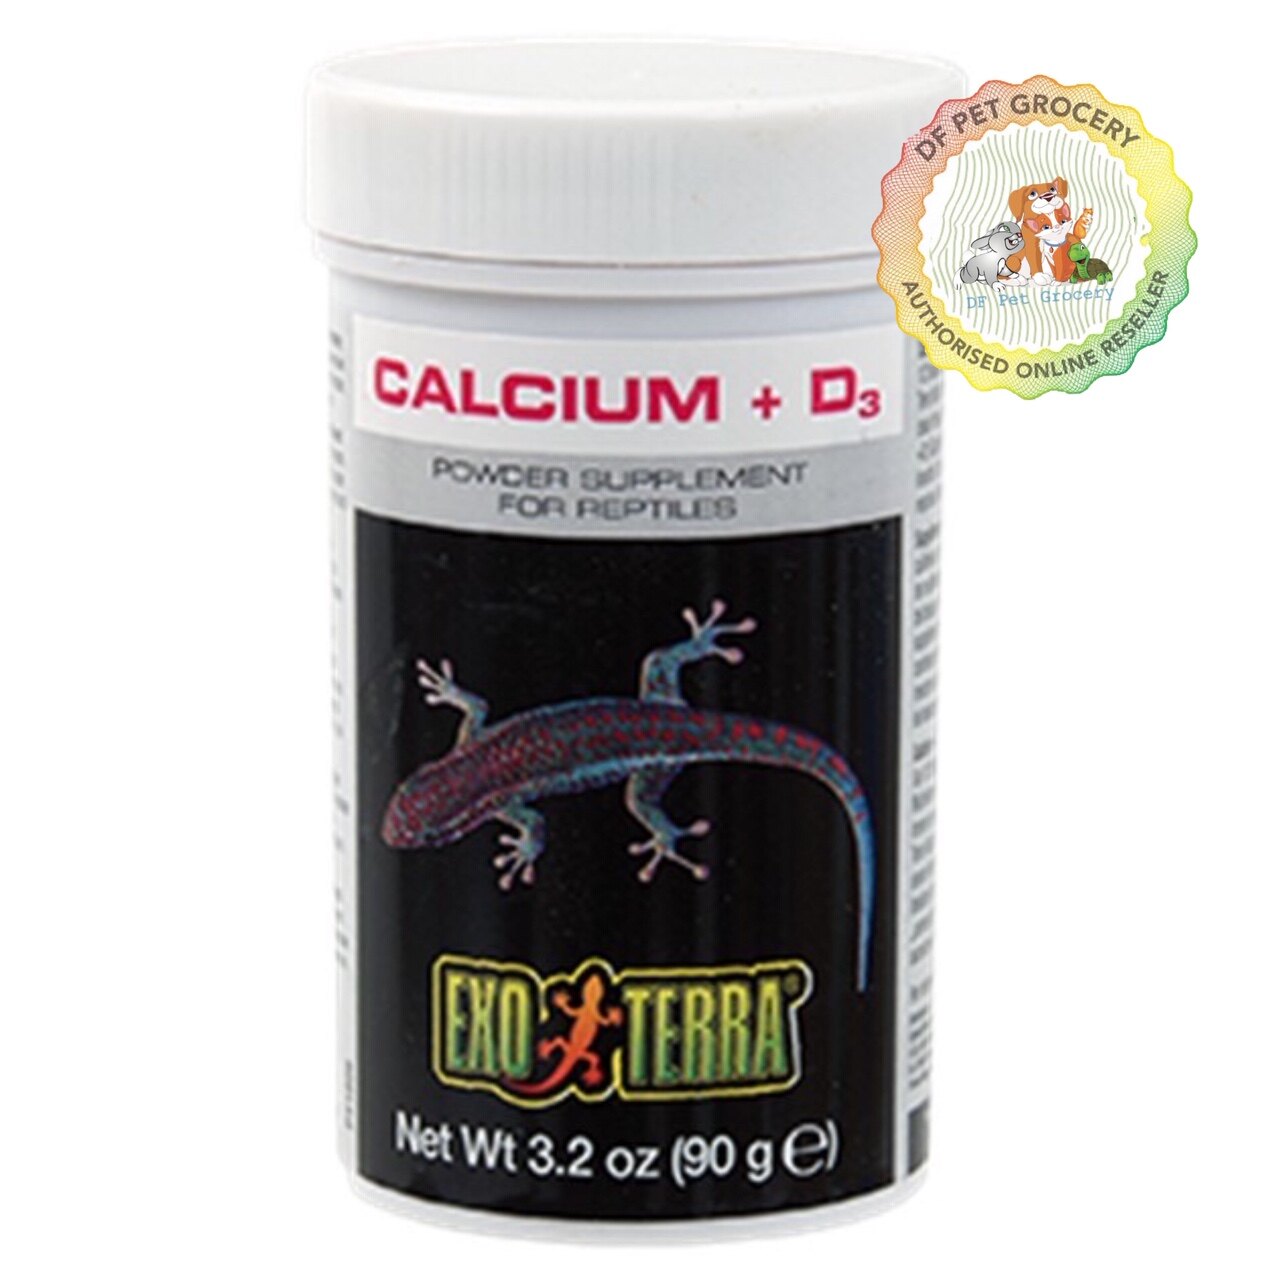 Exo Terra Calcium + D3 Powder Supplement For Reptiles 90g PT1856